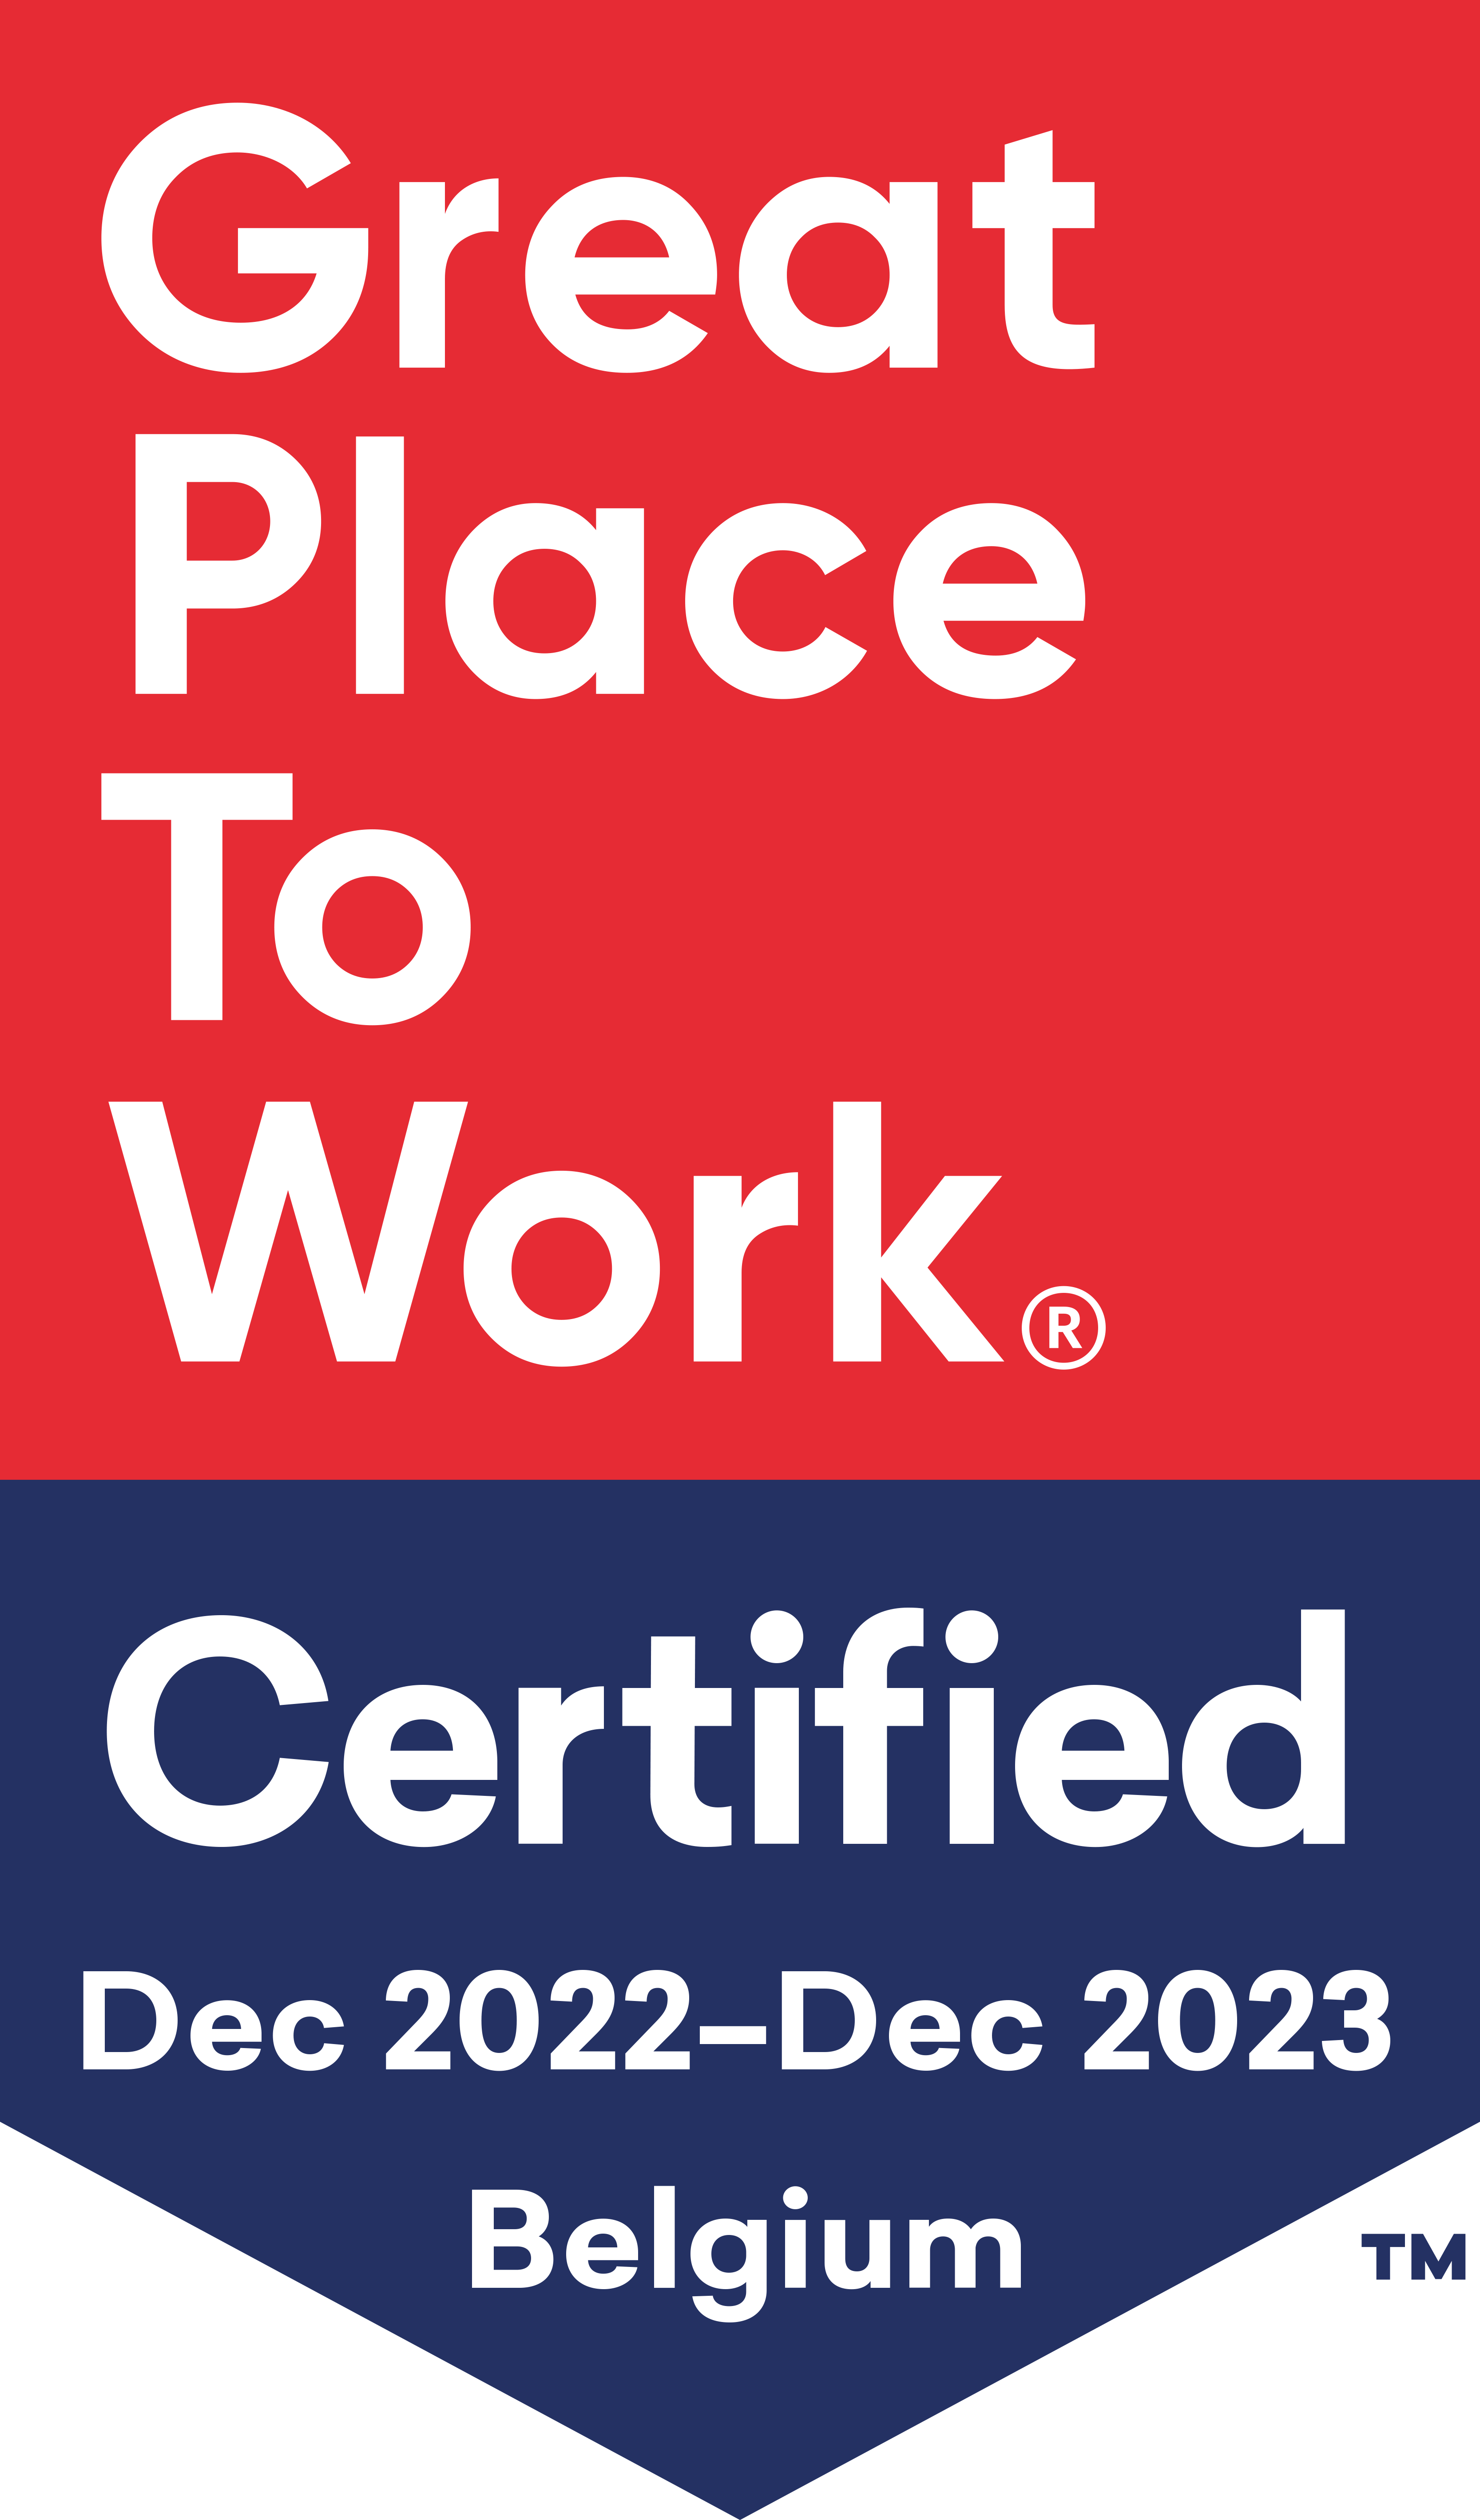 Great place to work® / Certified Dec 2022-Dec 2023™ Belgium